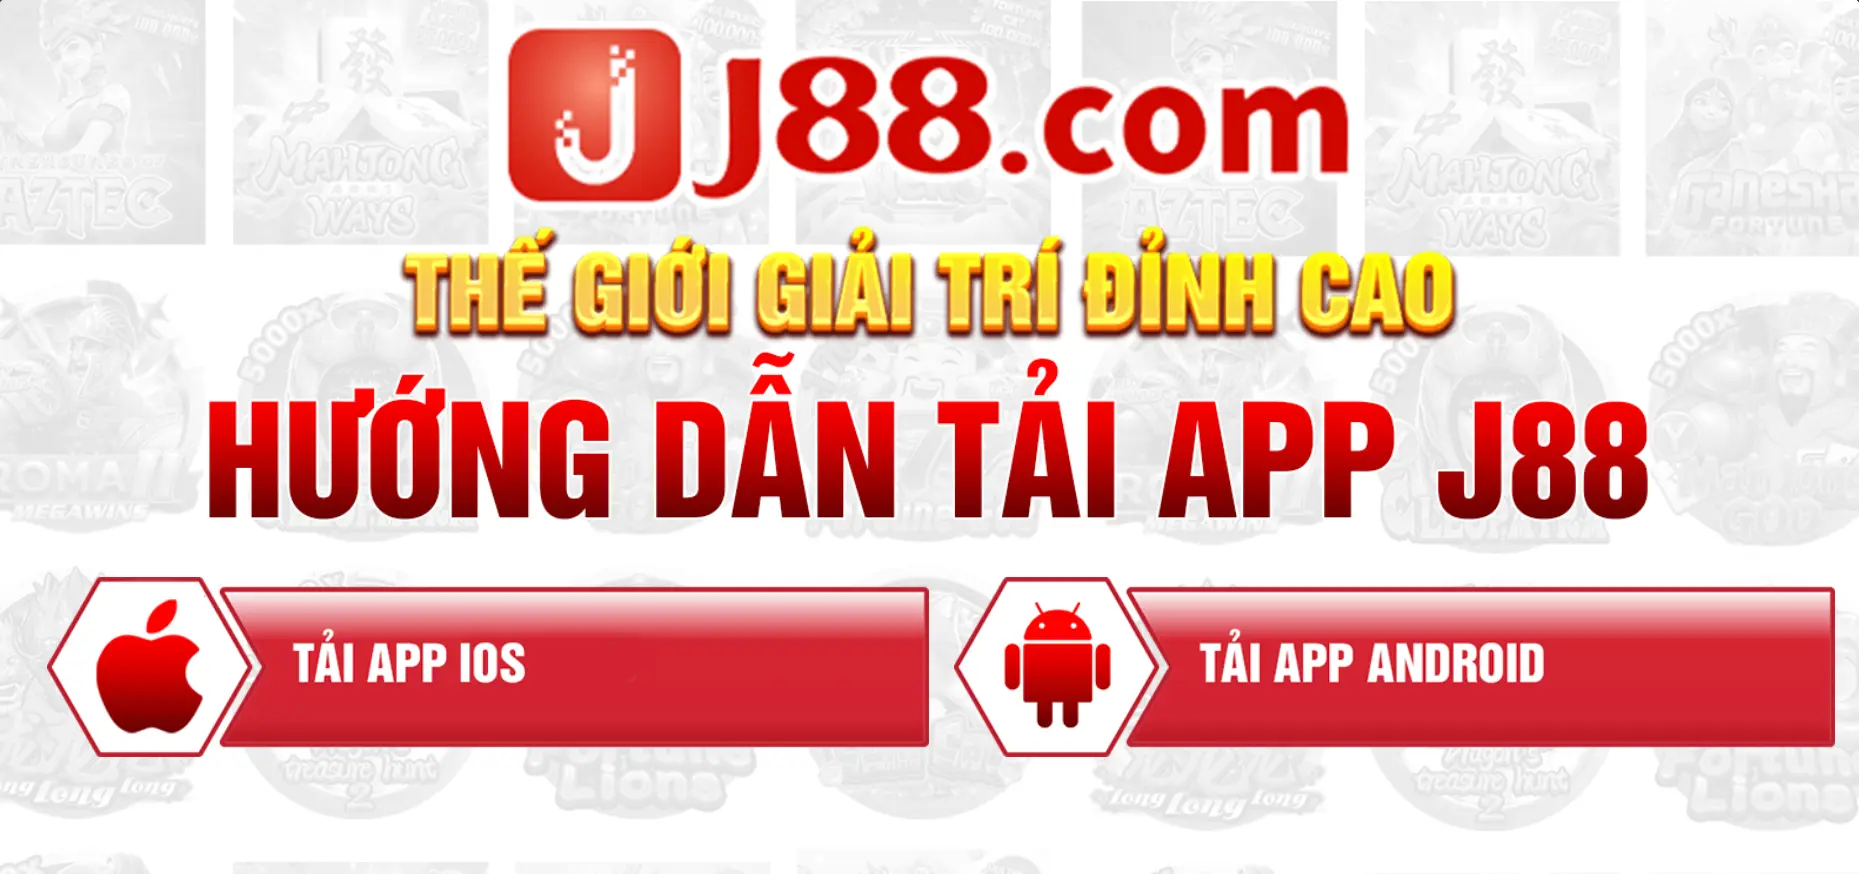 Tìm hiểu về những lý do anh em nên tải app J88